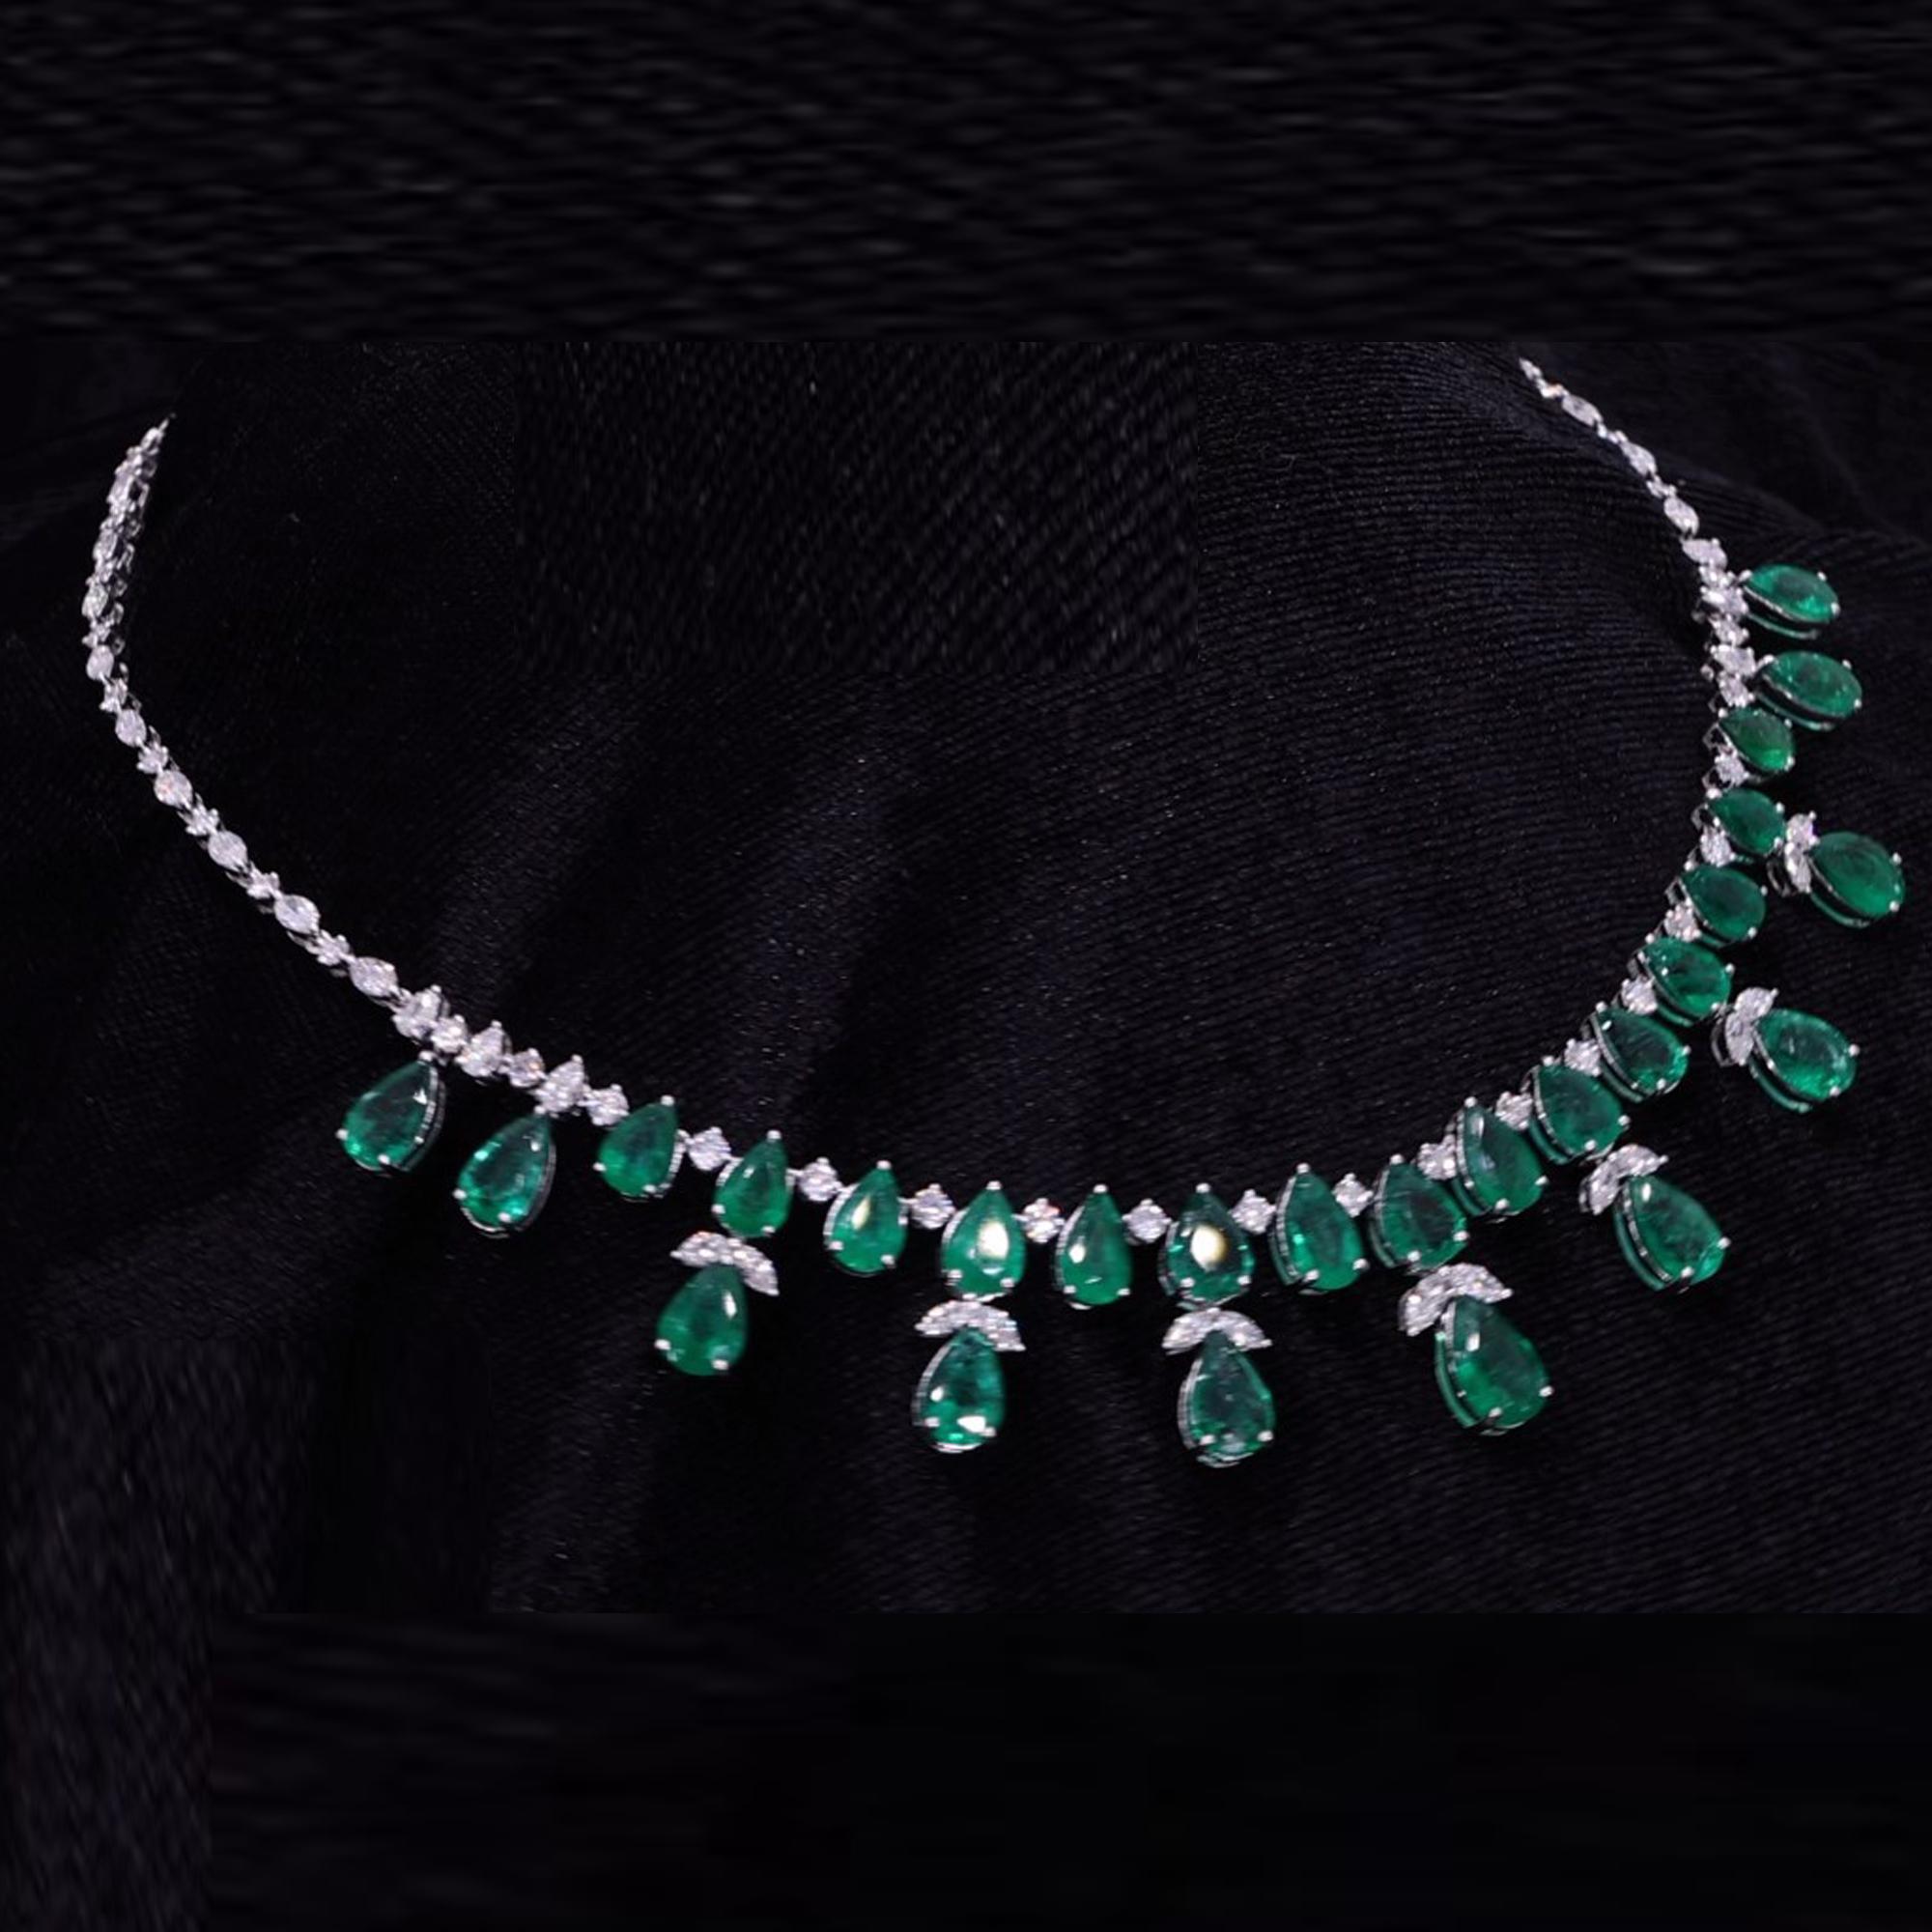 Emerald Cut Zambian Emerald Gemstone Choker Necklace Diamond 18 Karat White Gold Jewelry For Sale